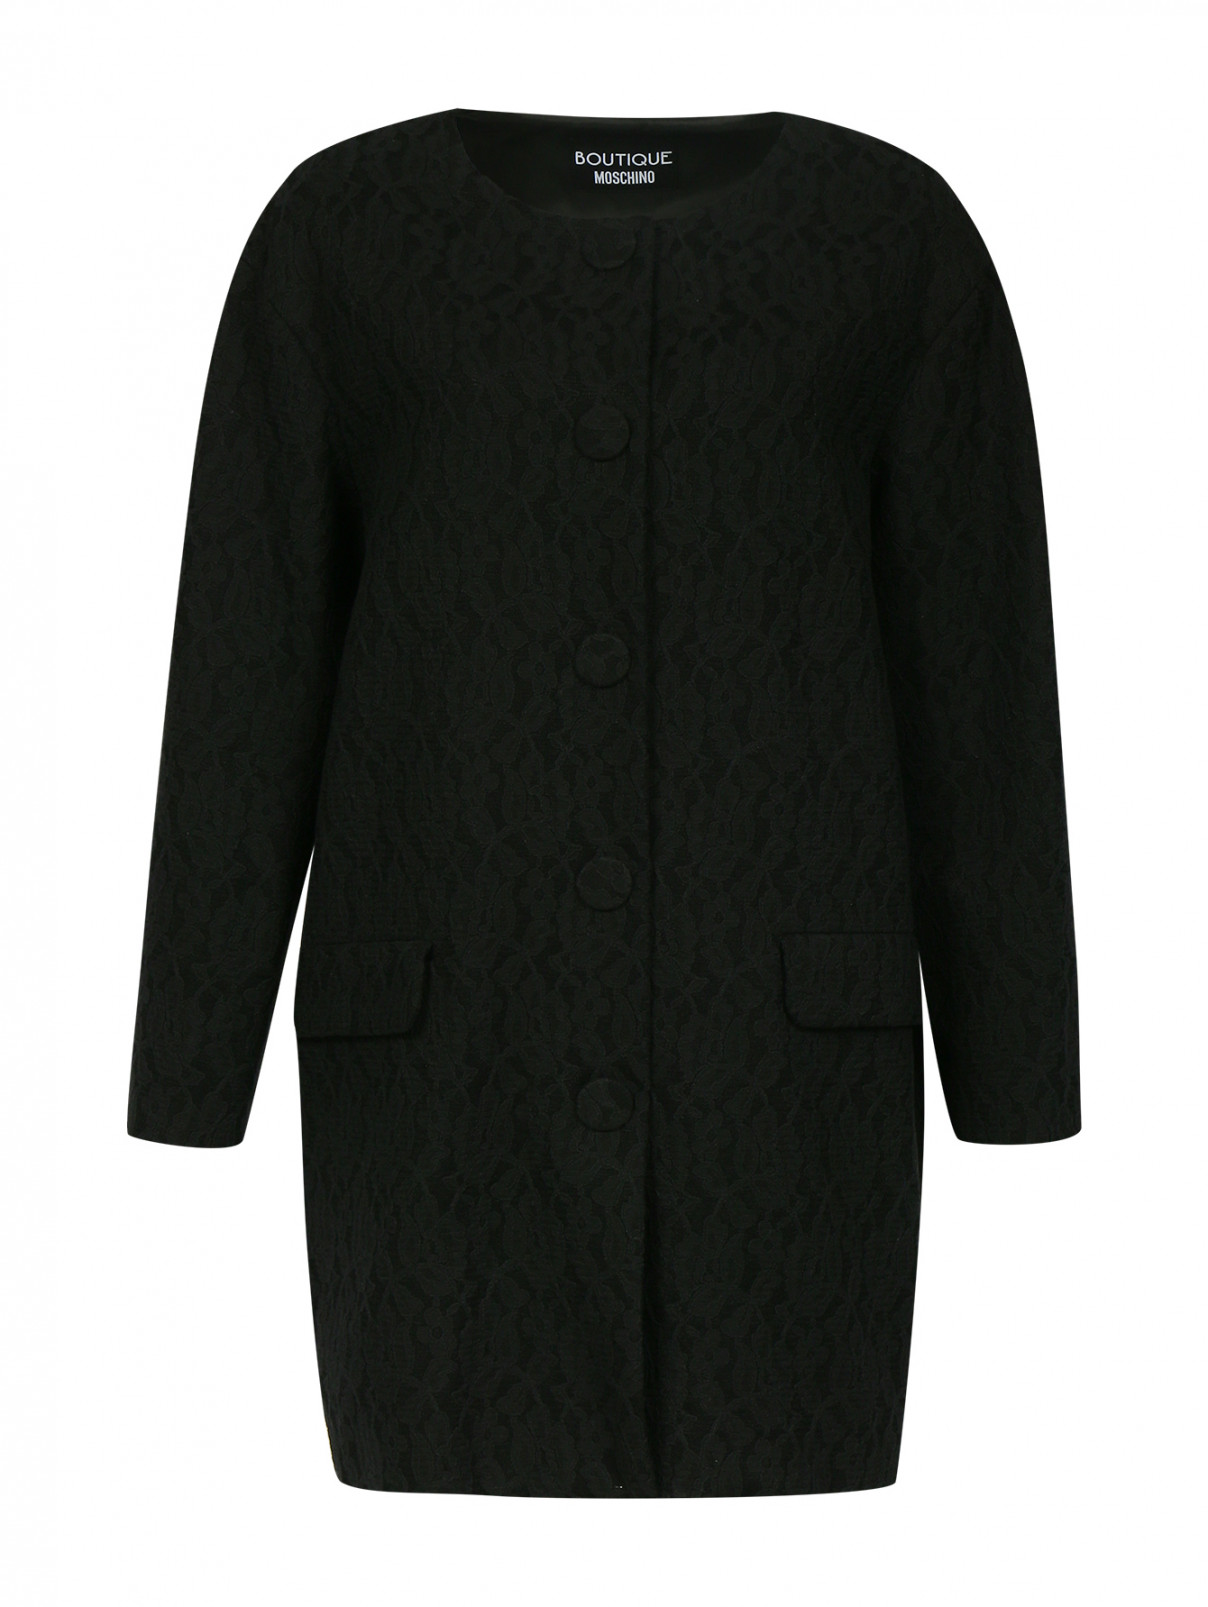 Пальто декорированное кружевом Moschino Boutique  –  Общий вид  – Цвет:  Черный